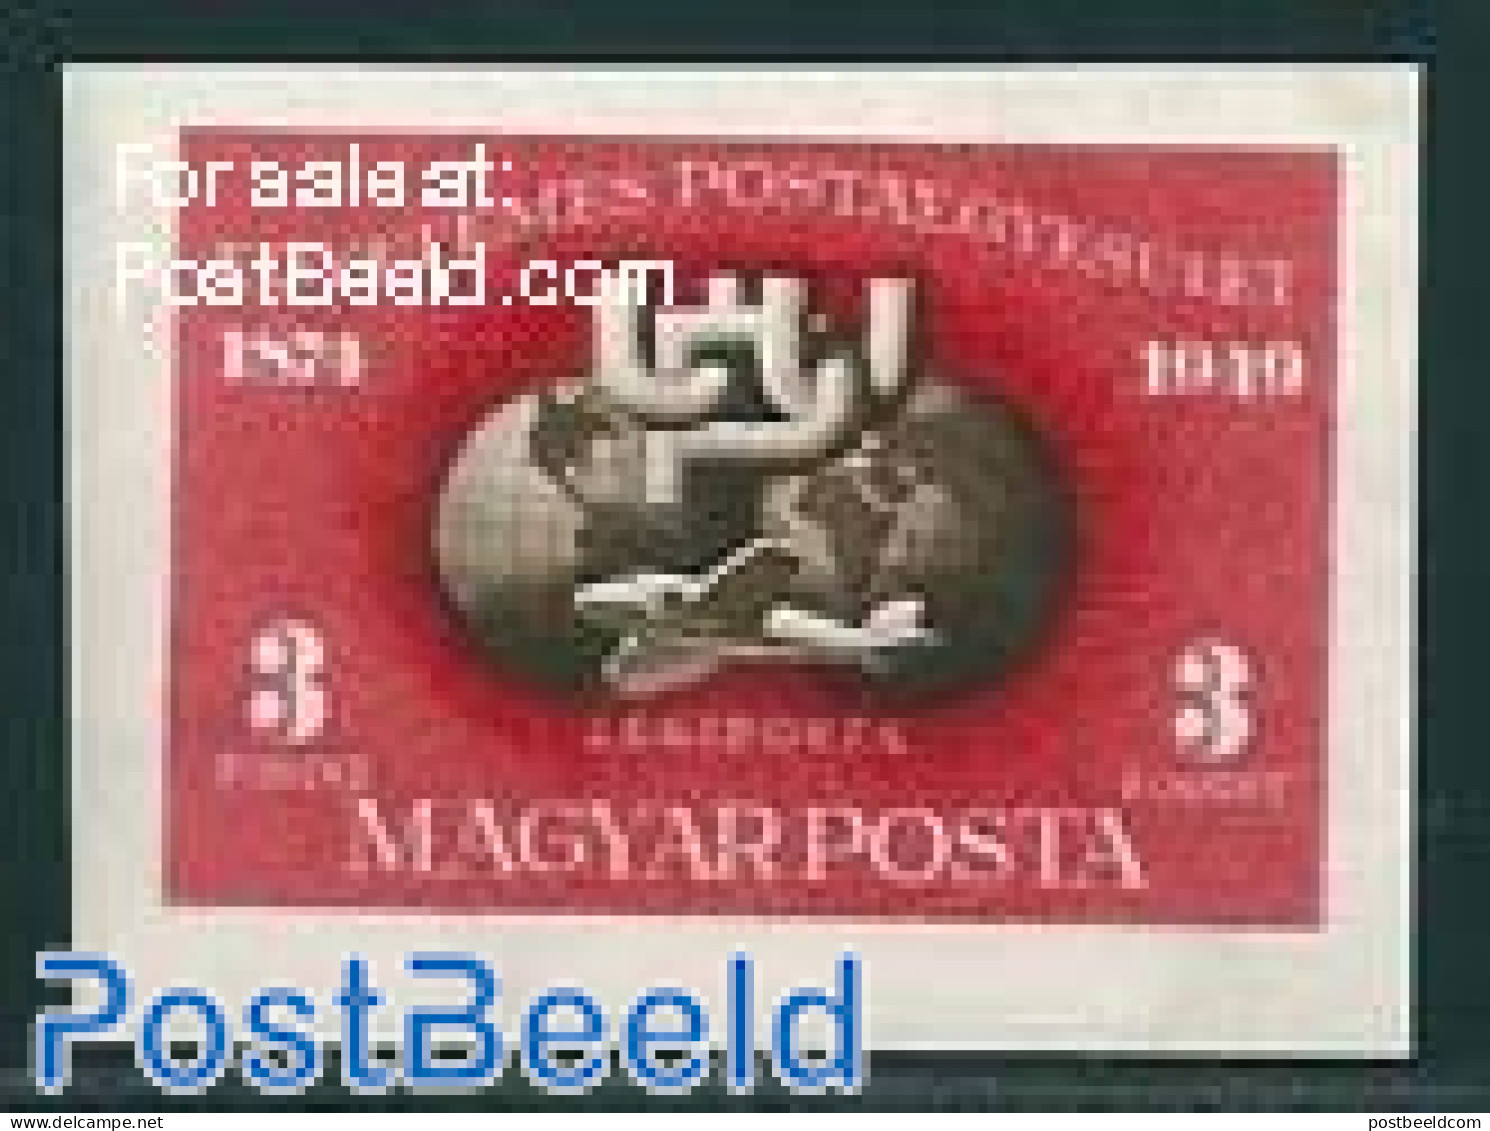 Hungary 1950 75 Years UPU 1v, Imperforated, Unused (hinged), U.P.U. - Neufs